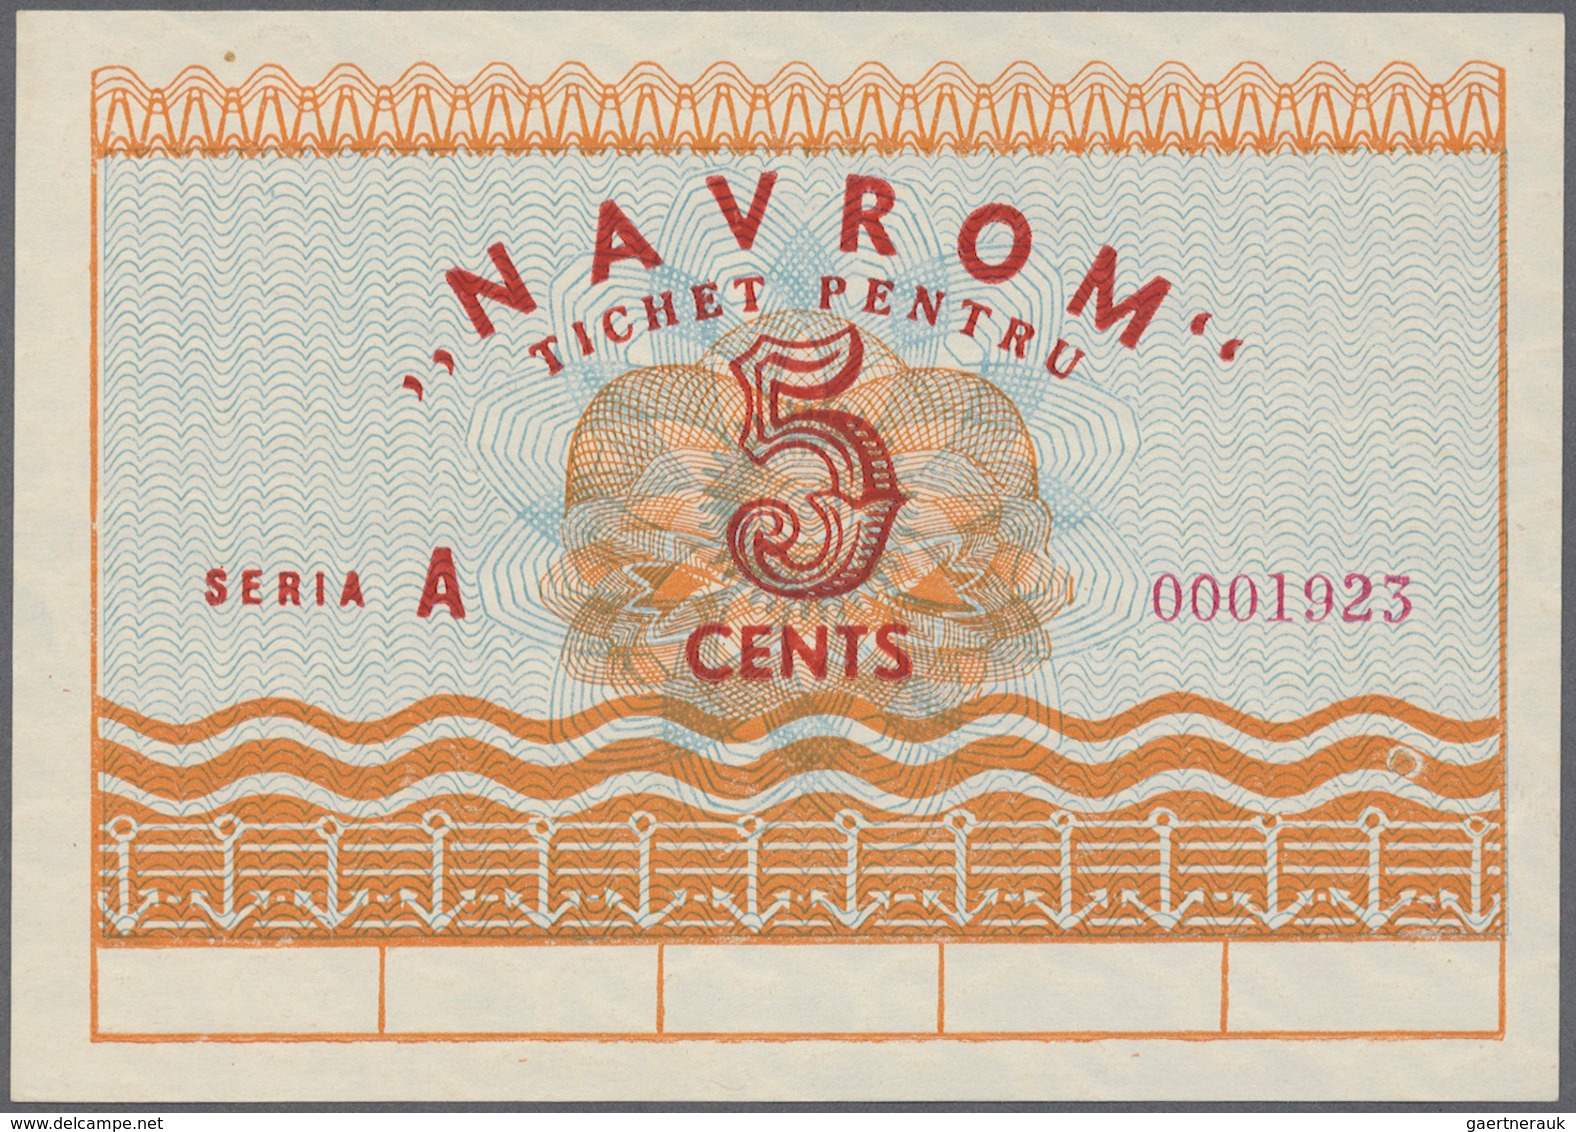 02261 Romania / Rumänien: 5 Cents Navrom Serie A ND, P. NL., In Condition: UNC. - Rumania